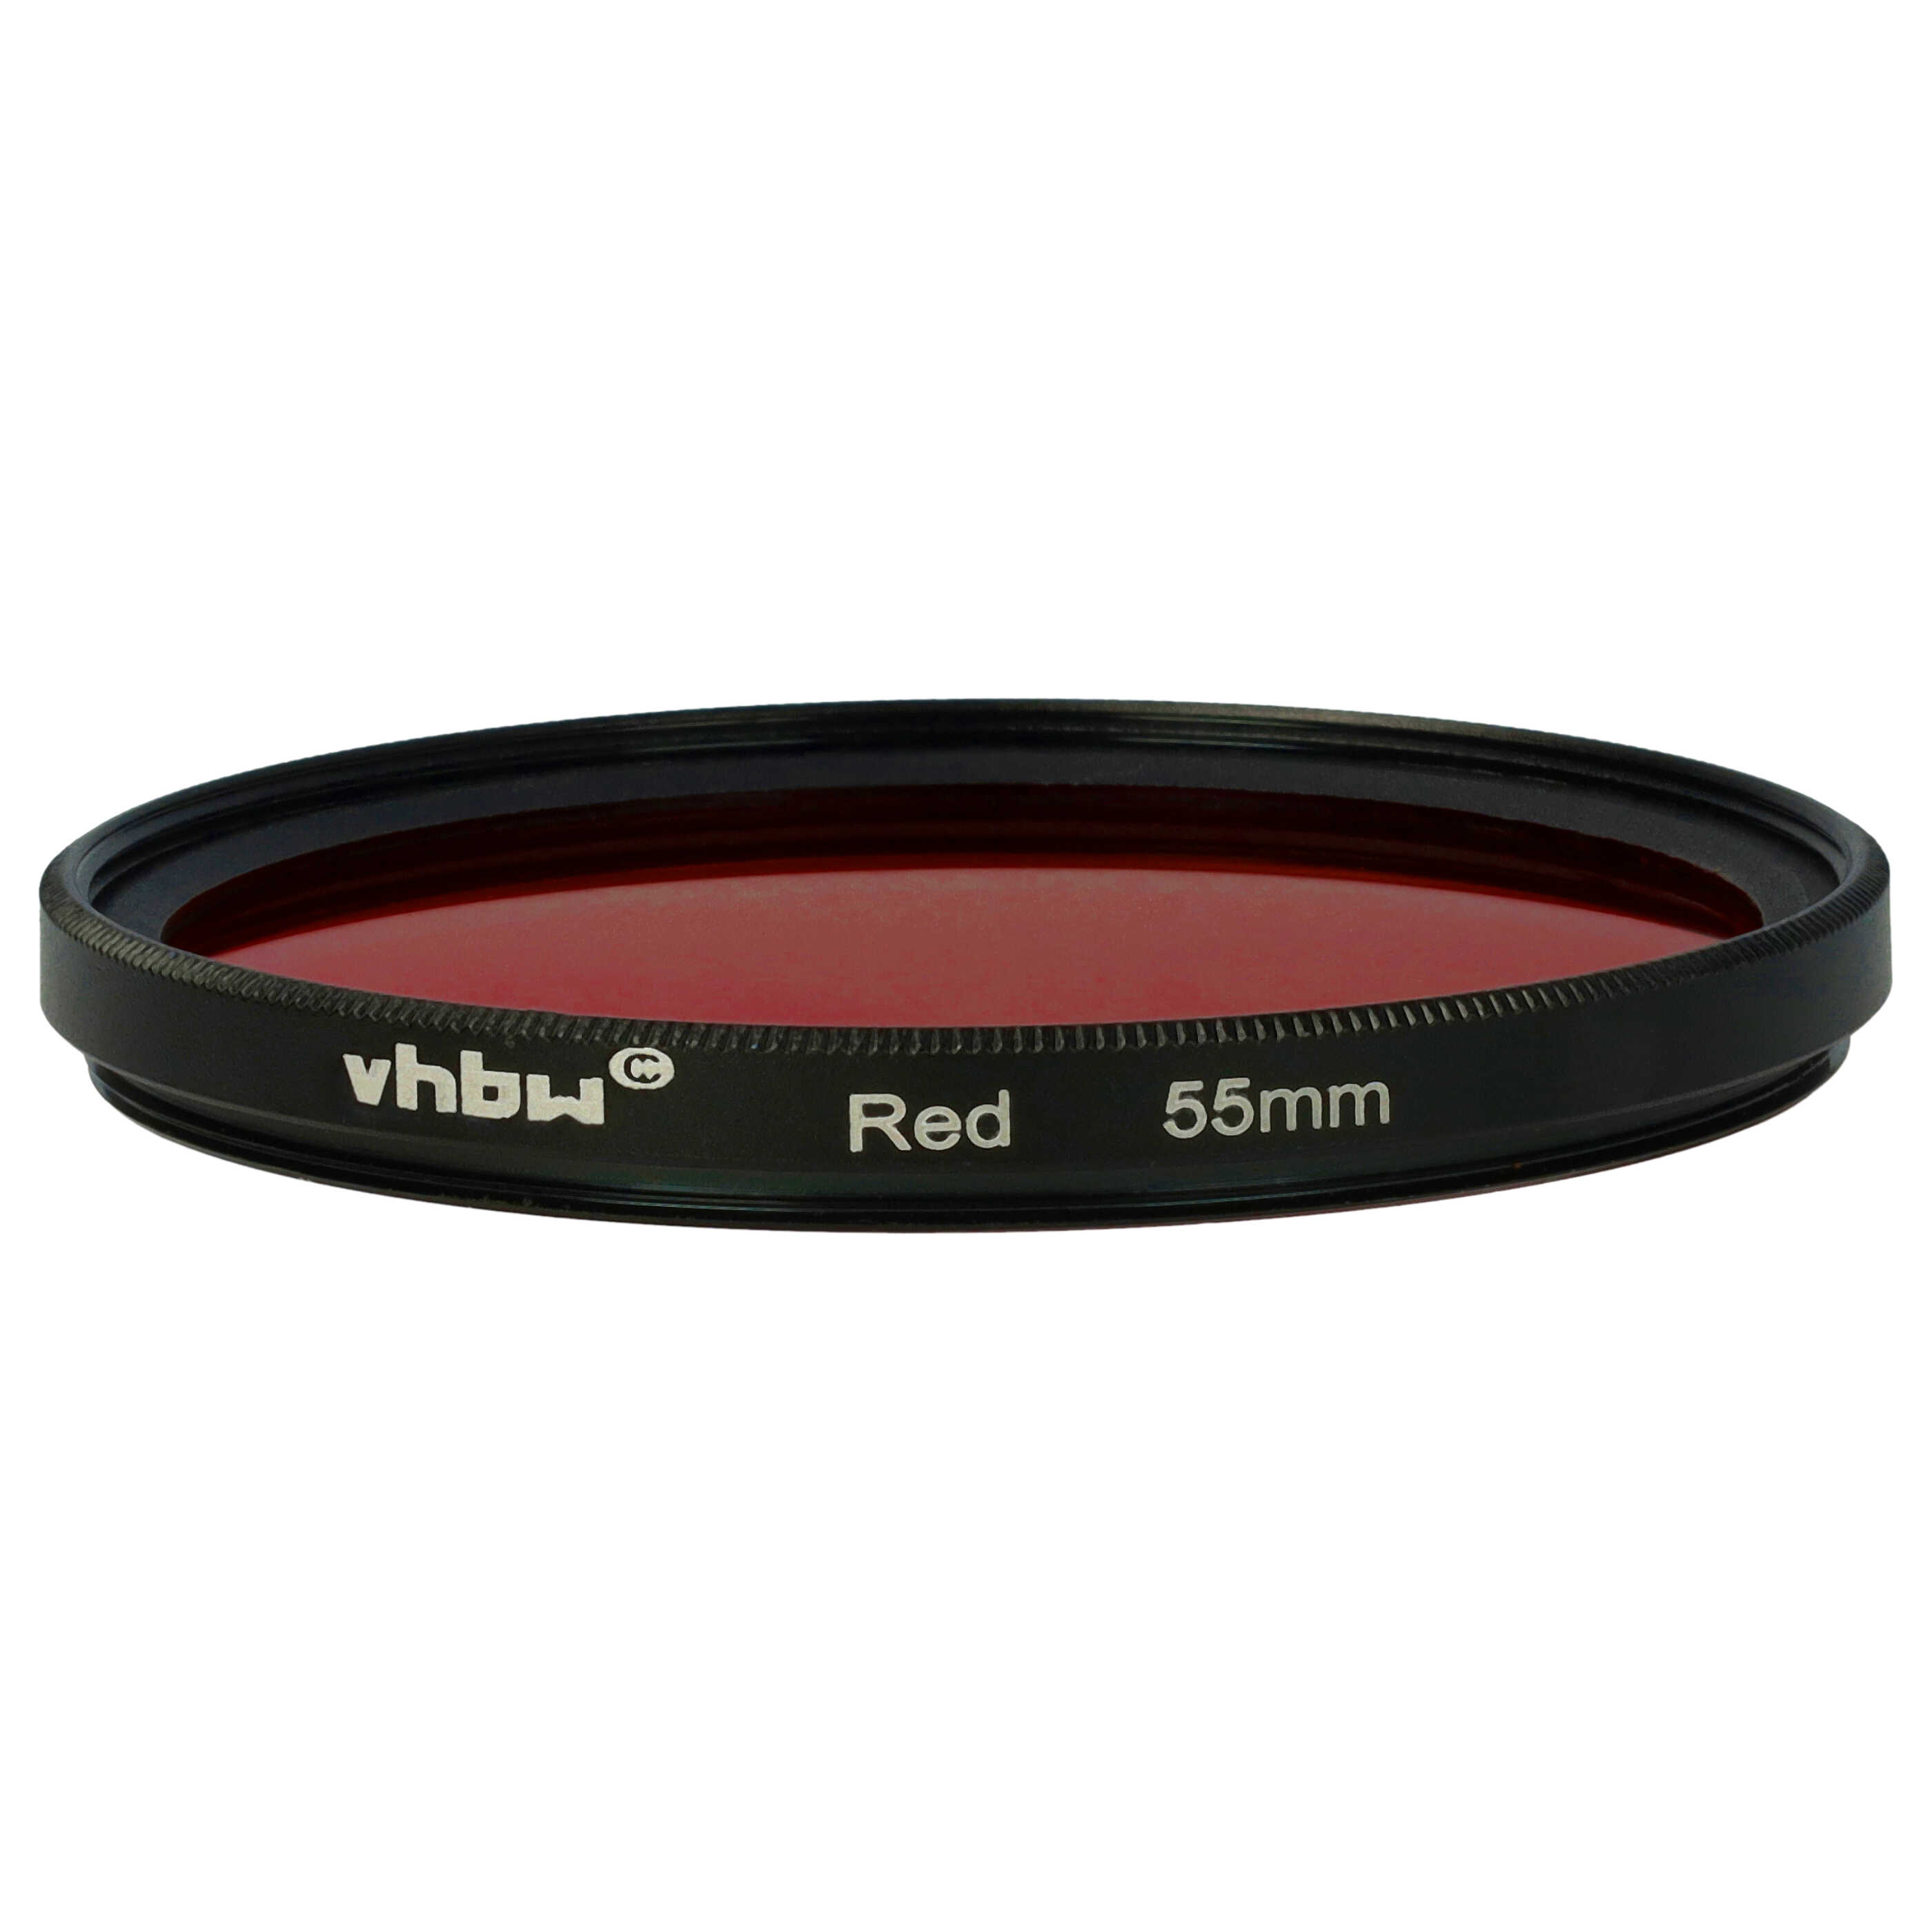 Farbfilter rot passend für Kamera Objektive mit 55 mm Filtergewinde - Rotfilter